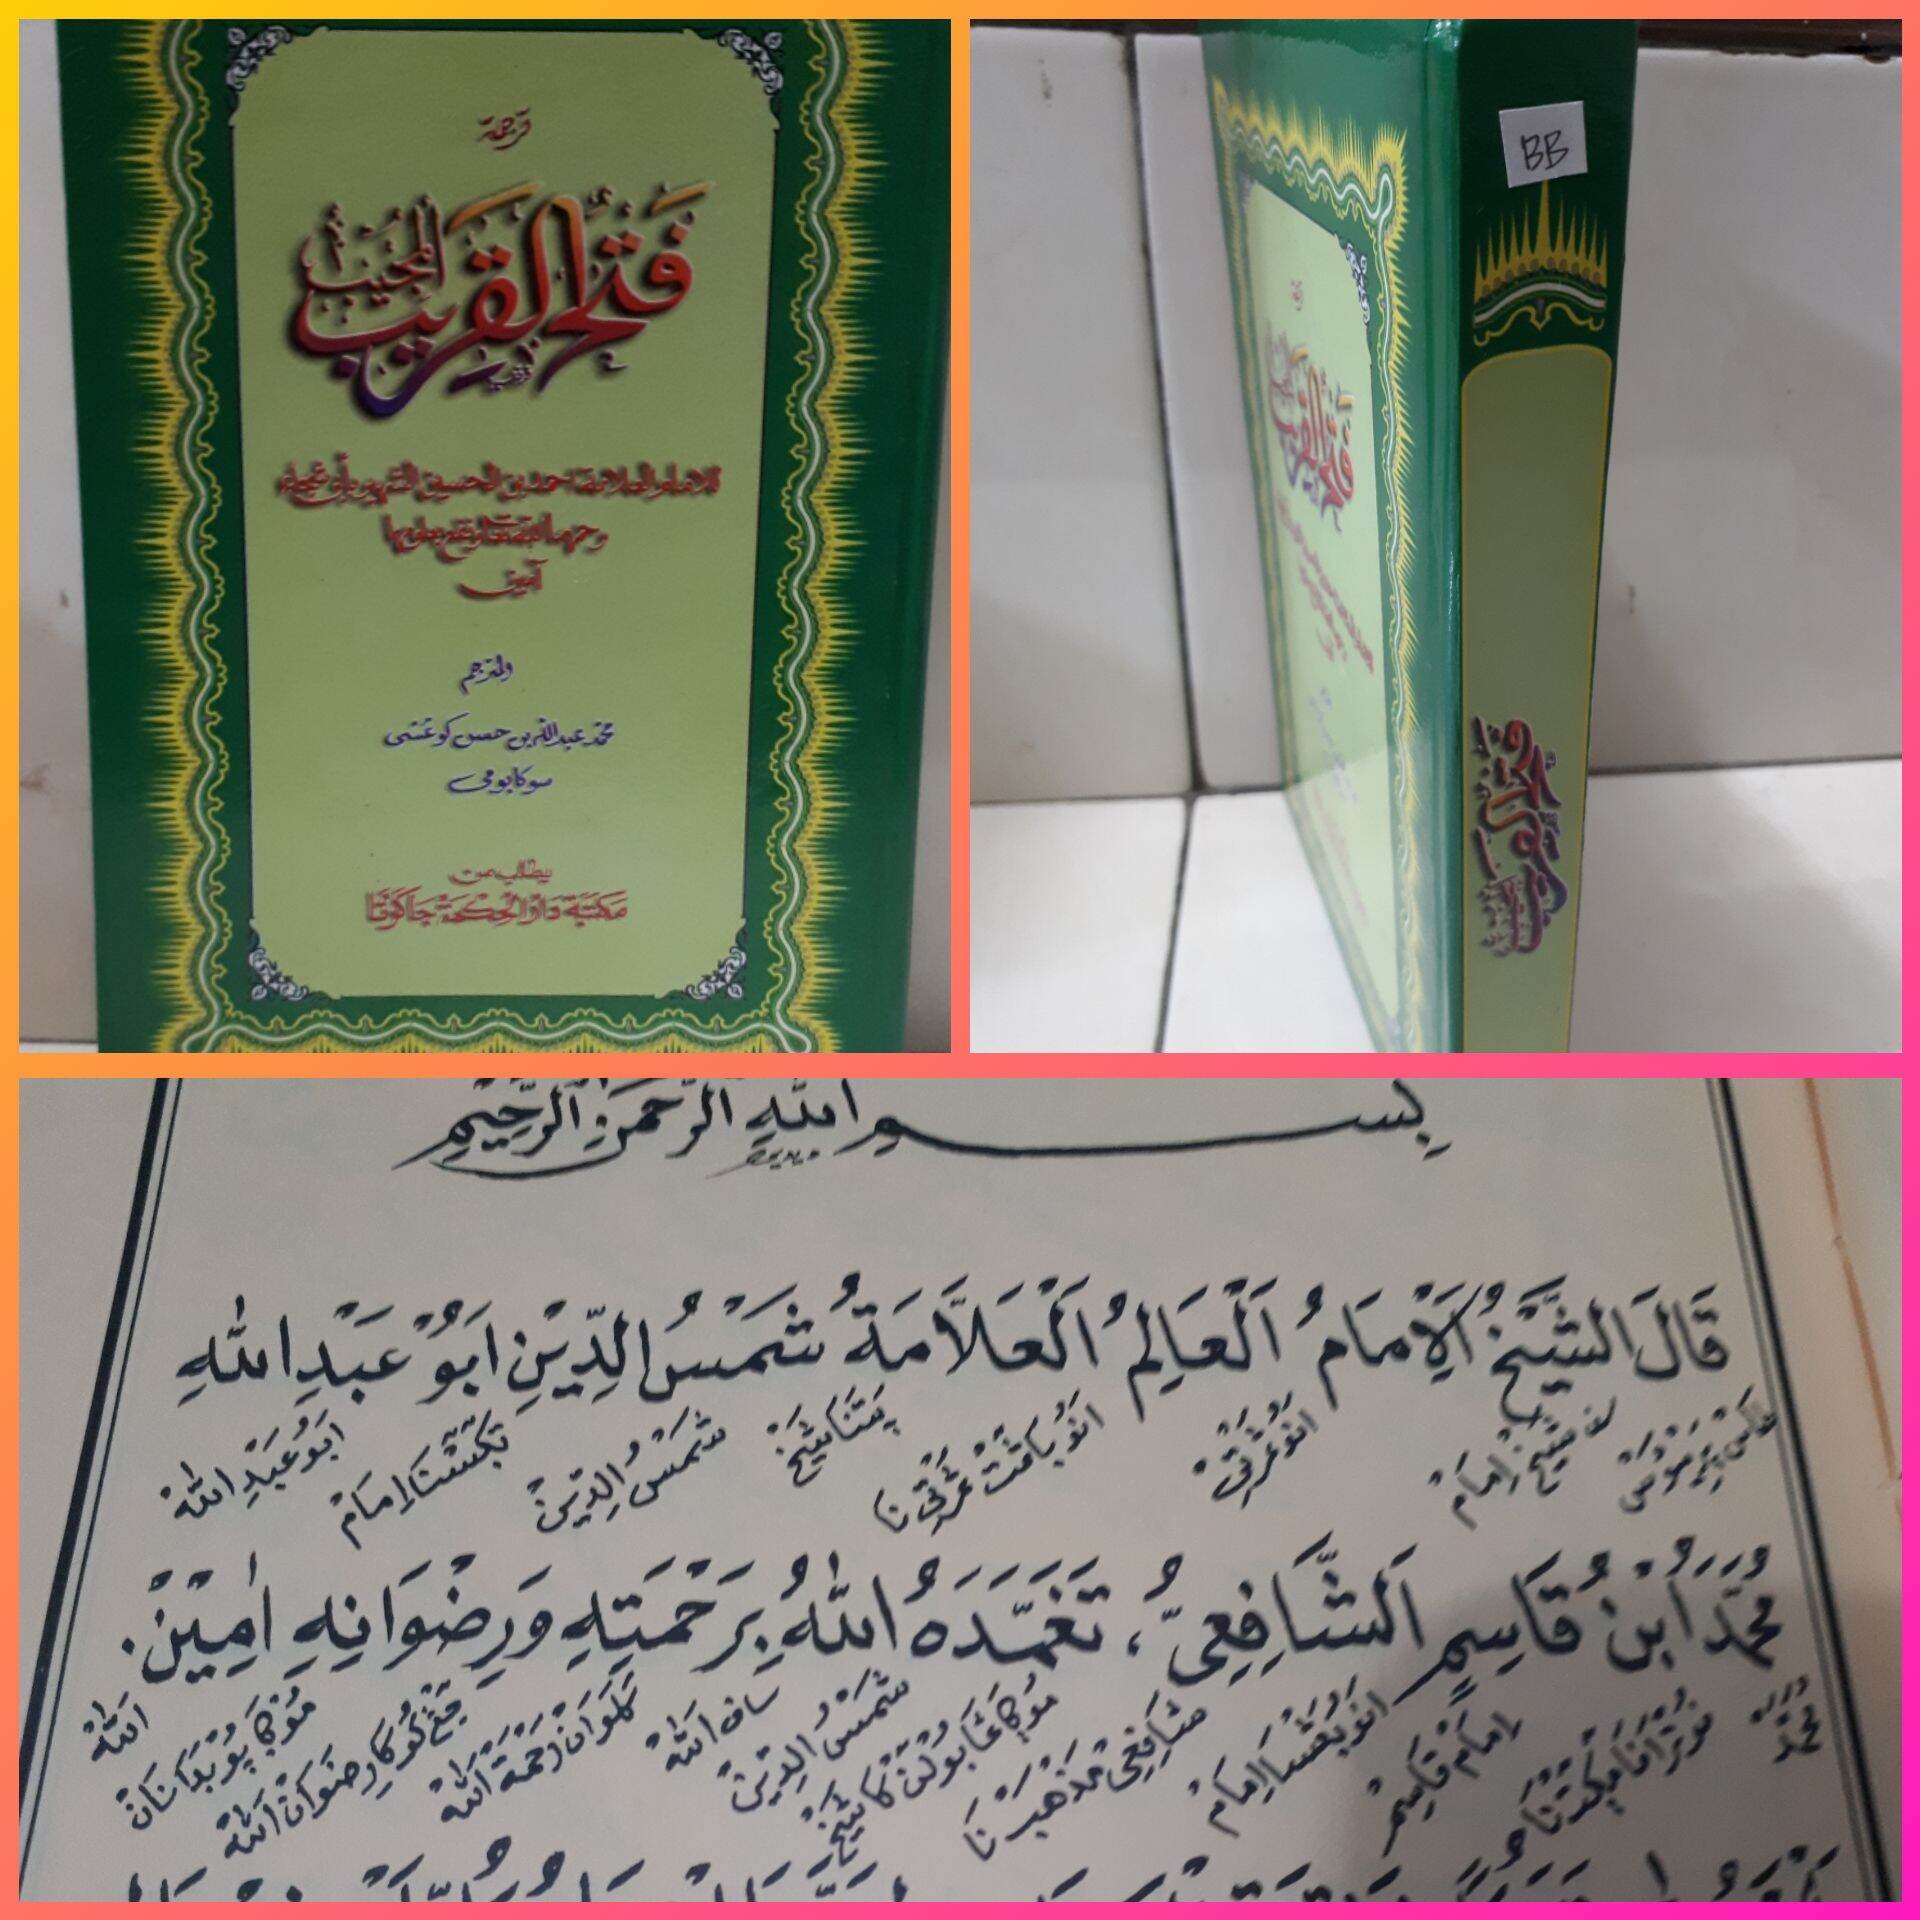 Gratis Terjemah Syarah Kitab Fathul Qorib Gratis Download Terjemahan